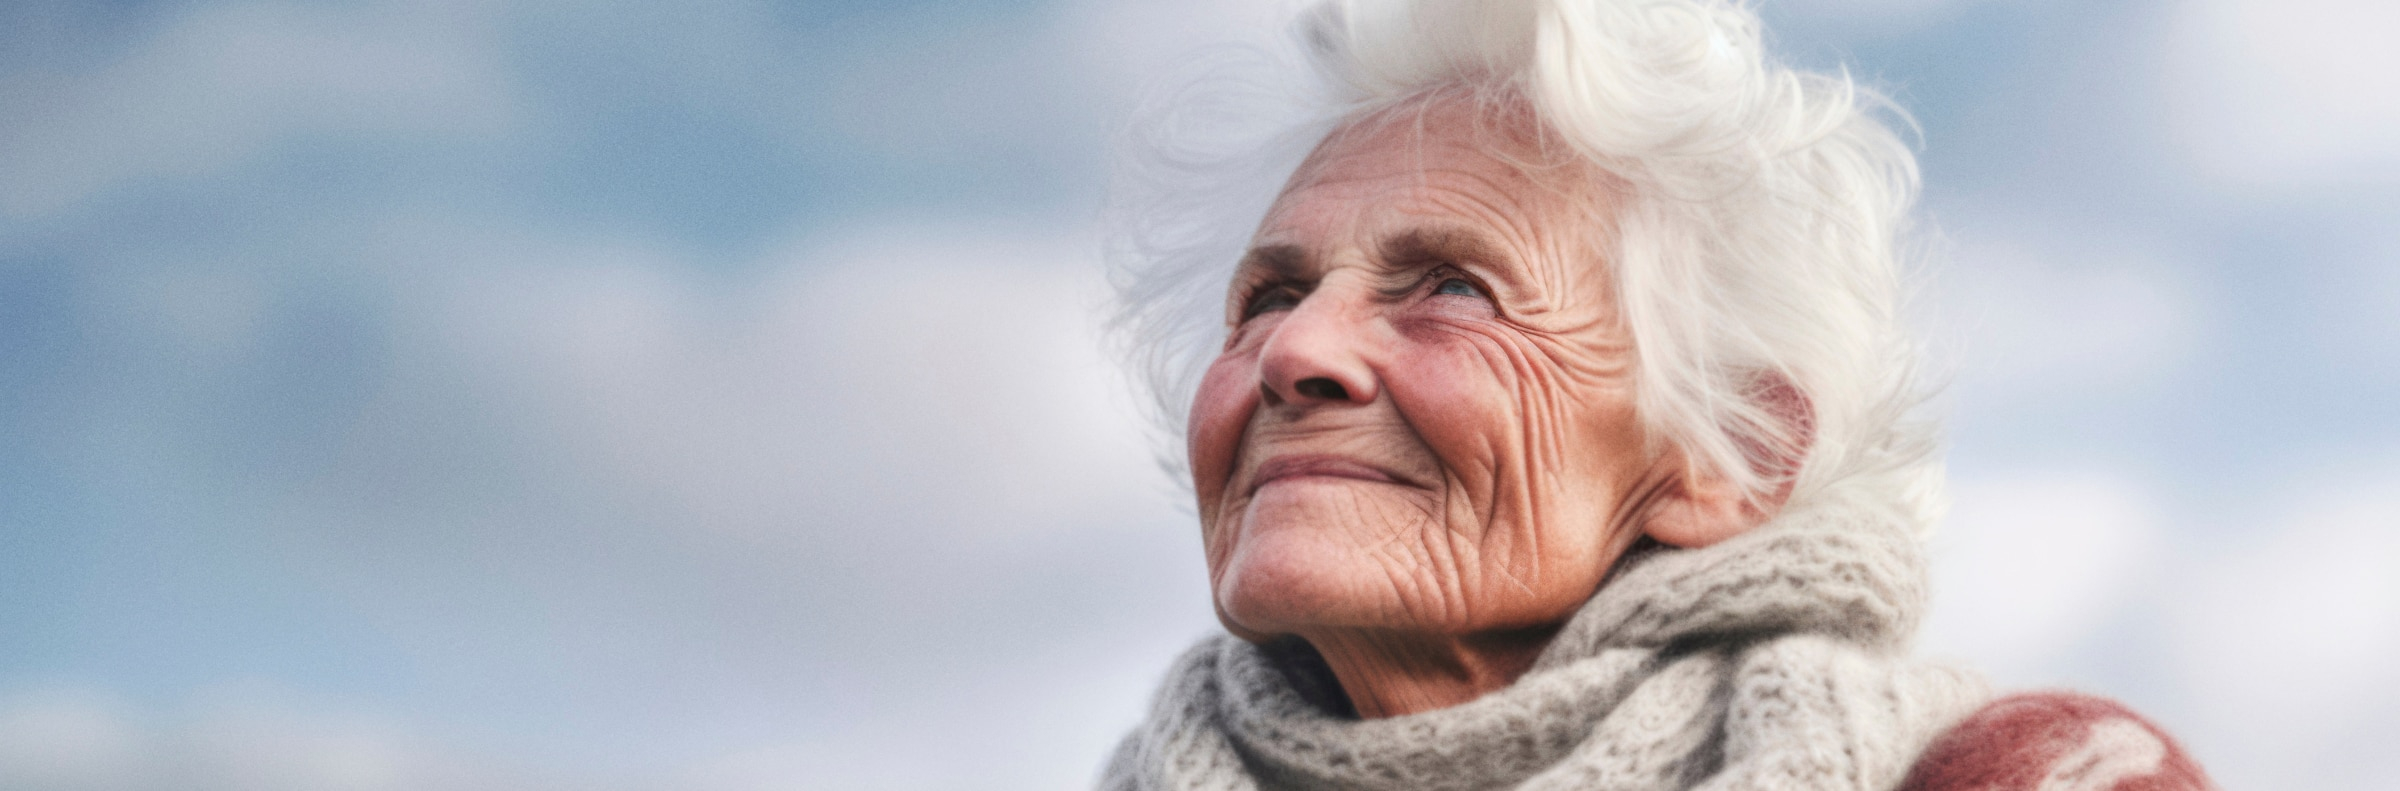 Parcours de soins de la personne âgée - Initiatives et perspectives au Luxembourg